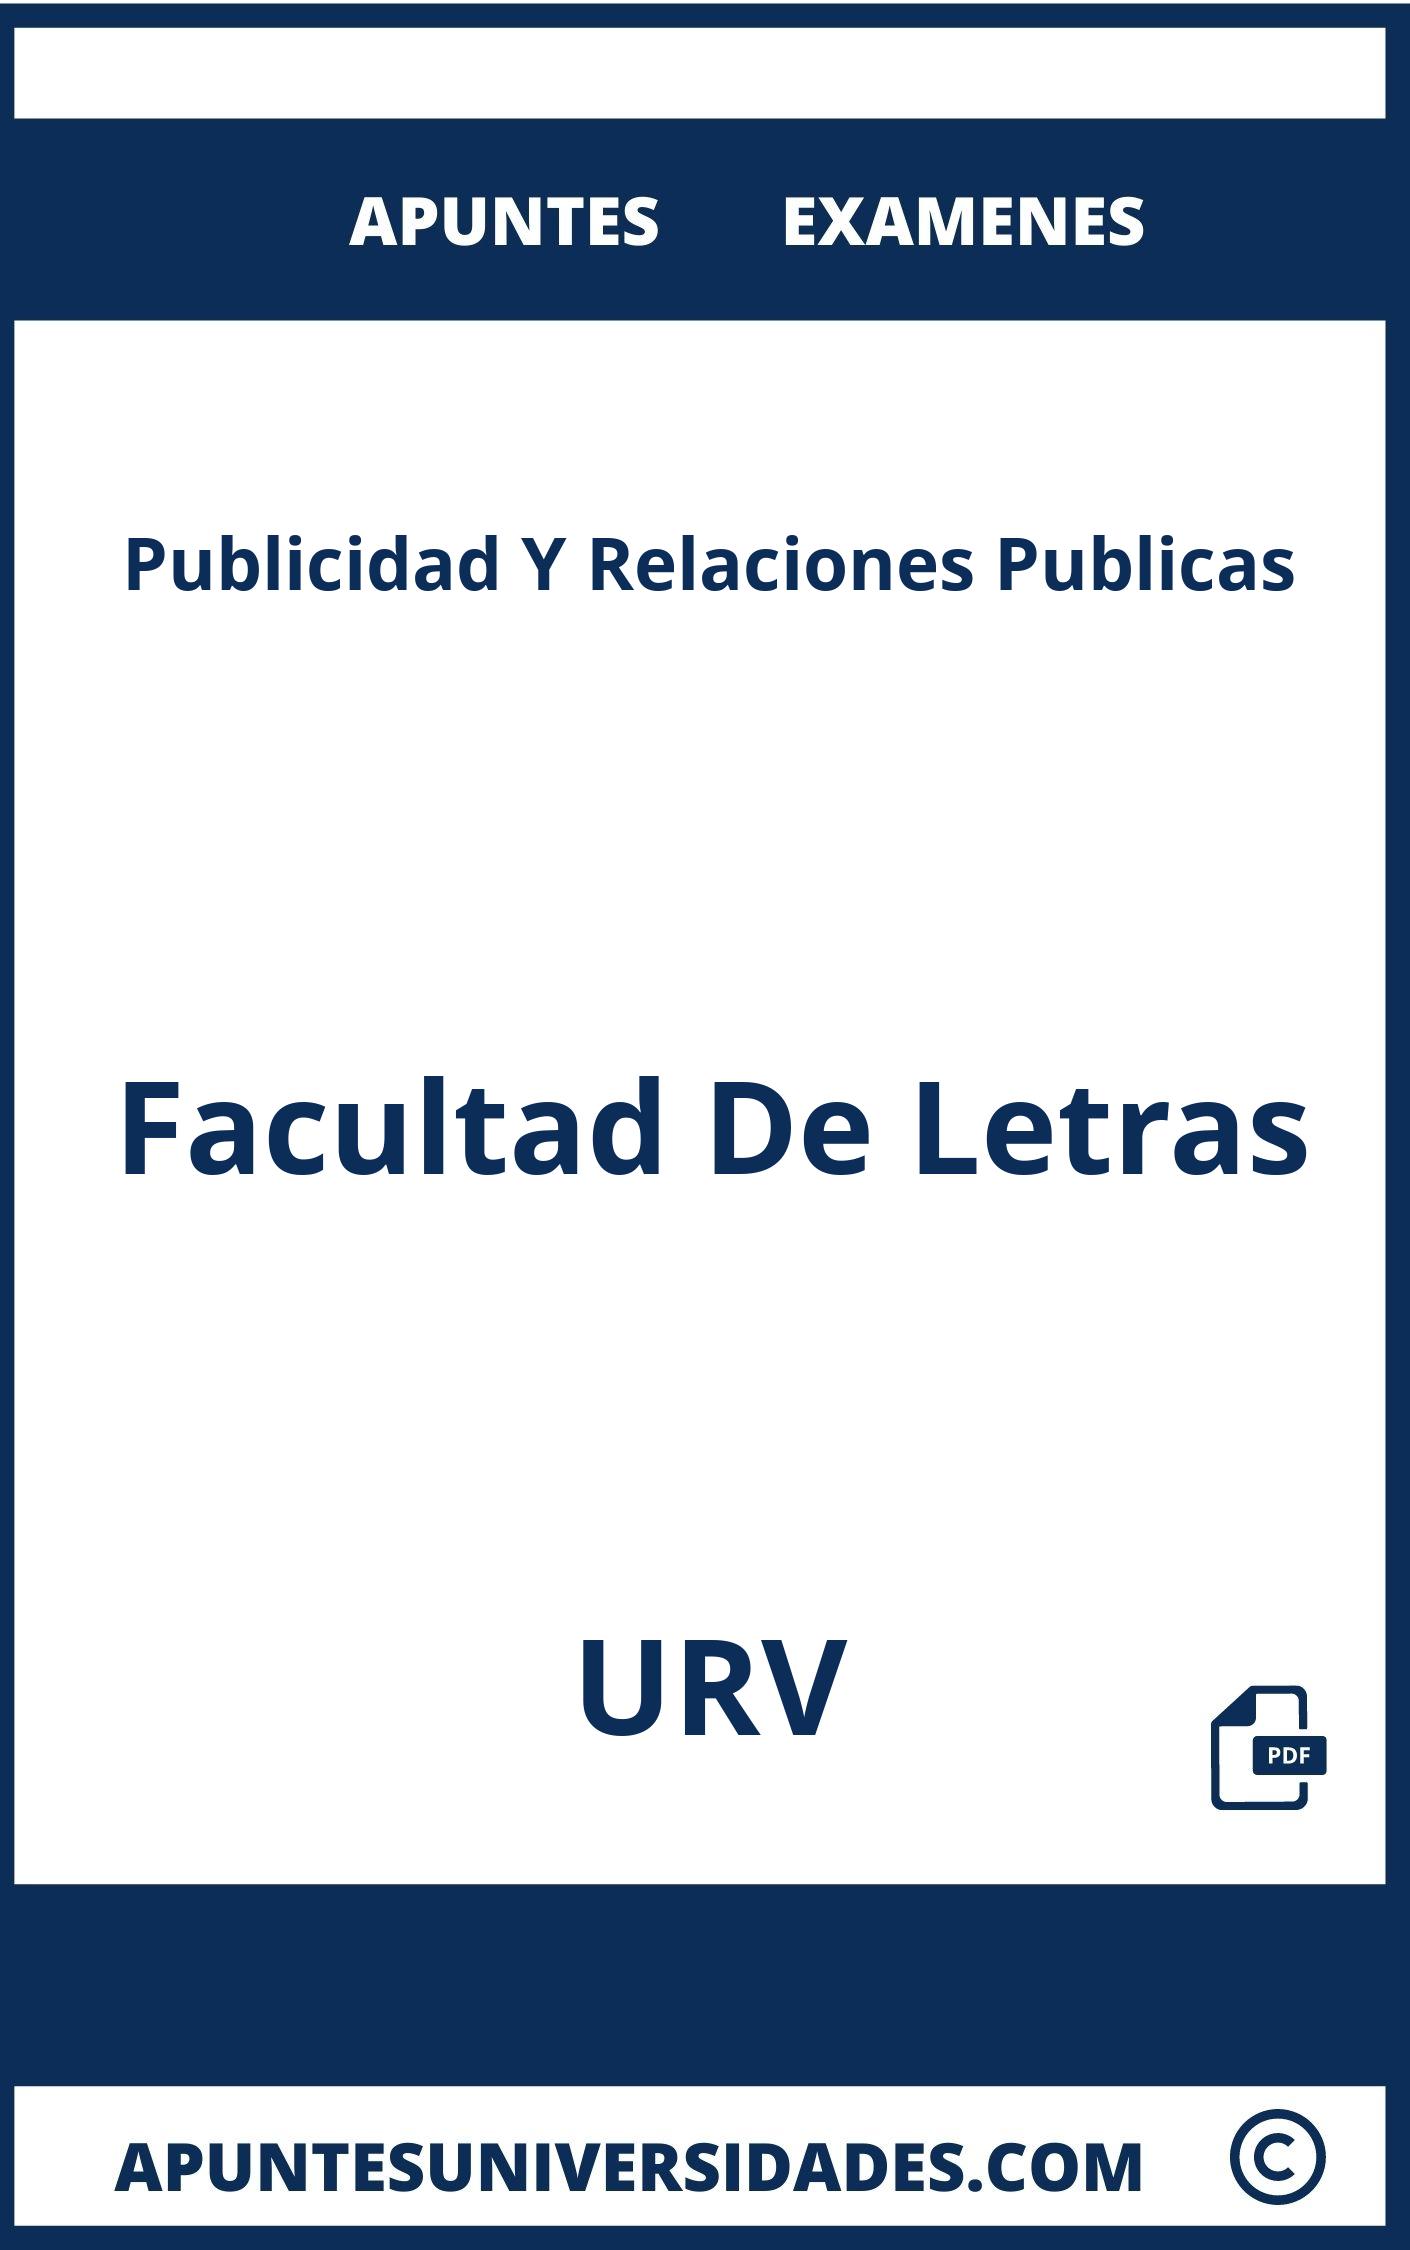 Apuntes Examenes Publicidad Y Relaciones Publicas URV